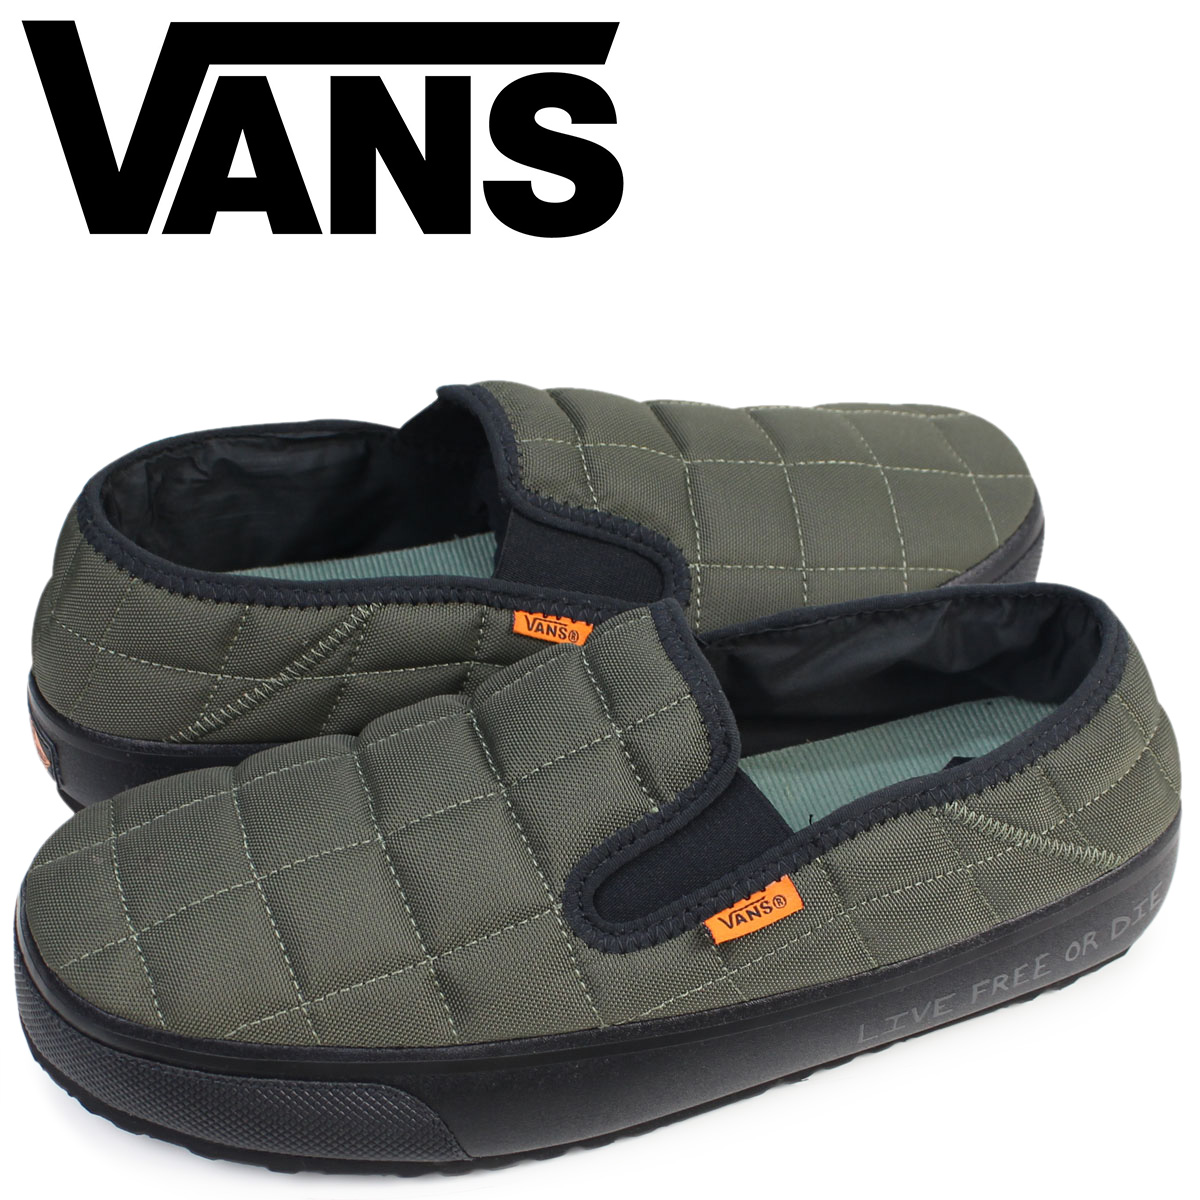 vans sandals for men